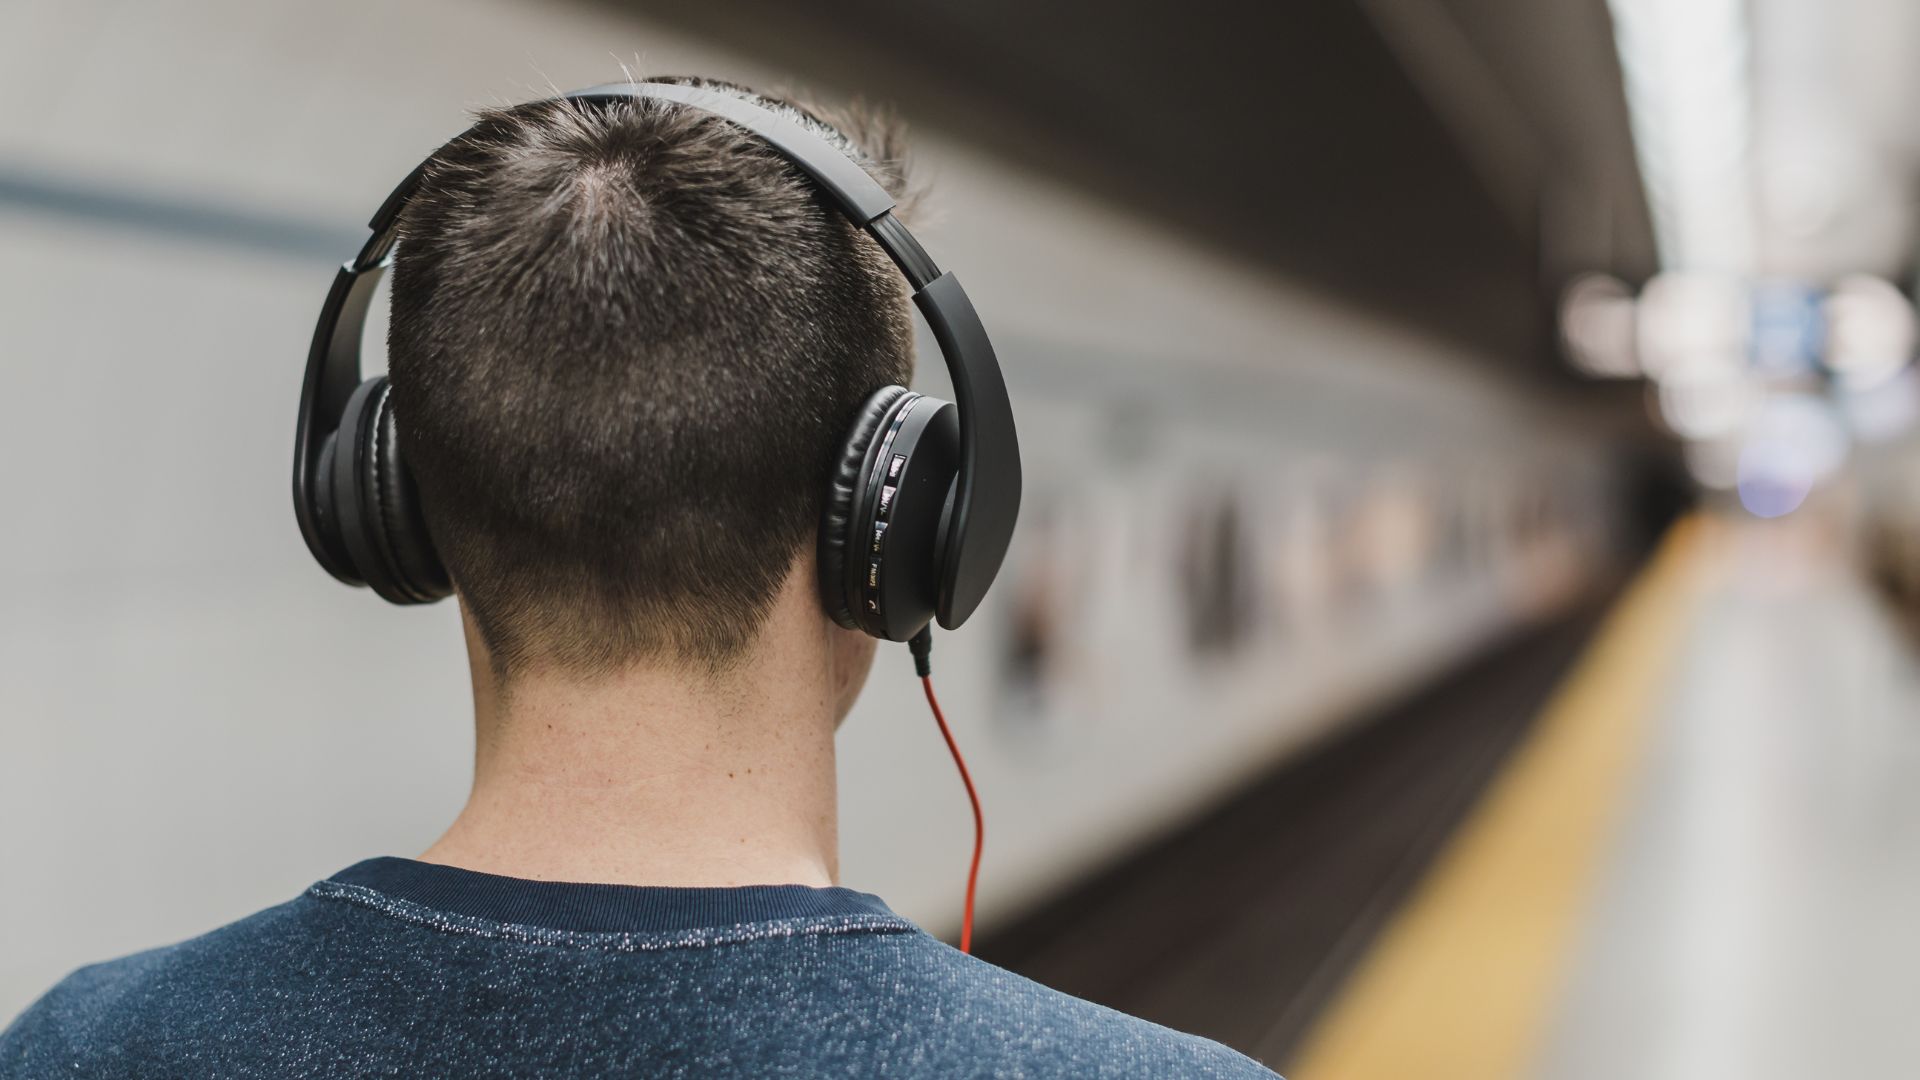 Música alta em fones de ouvido pode prejudicar a audição dos jovens e criar zumbido